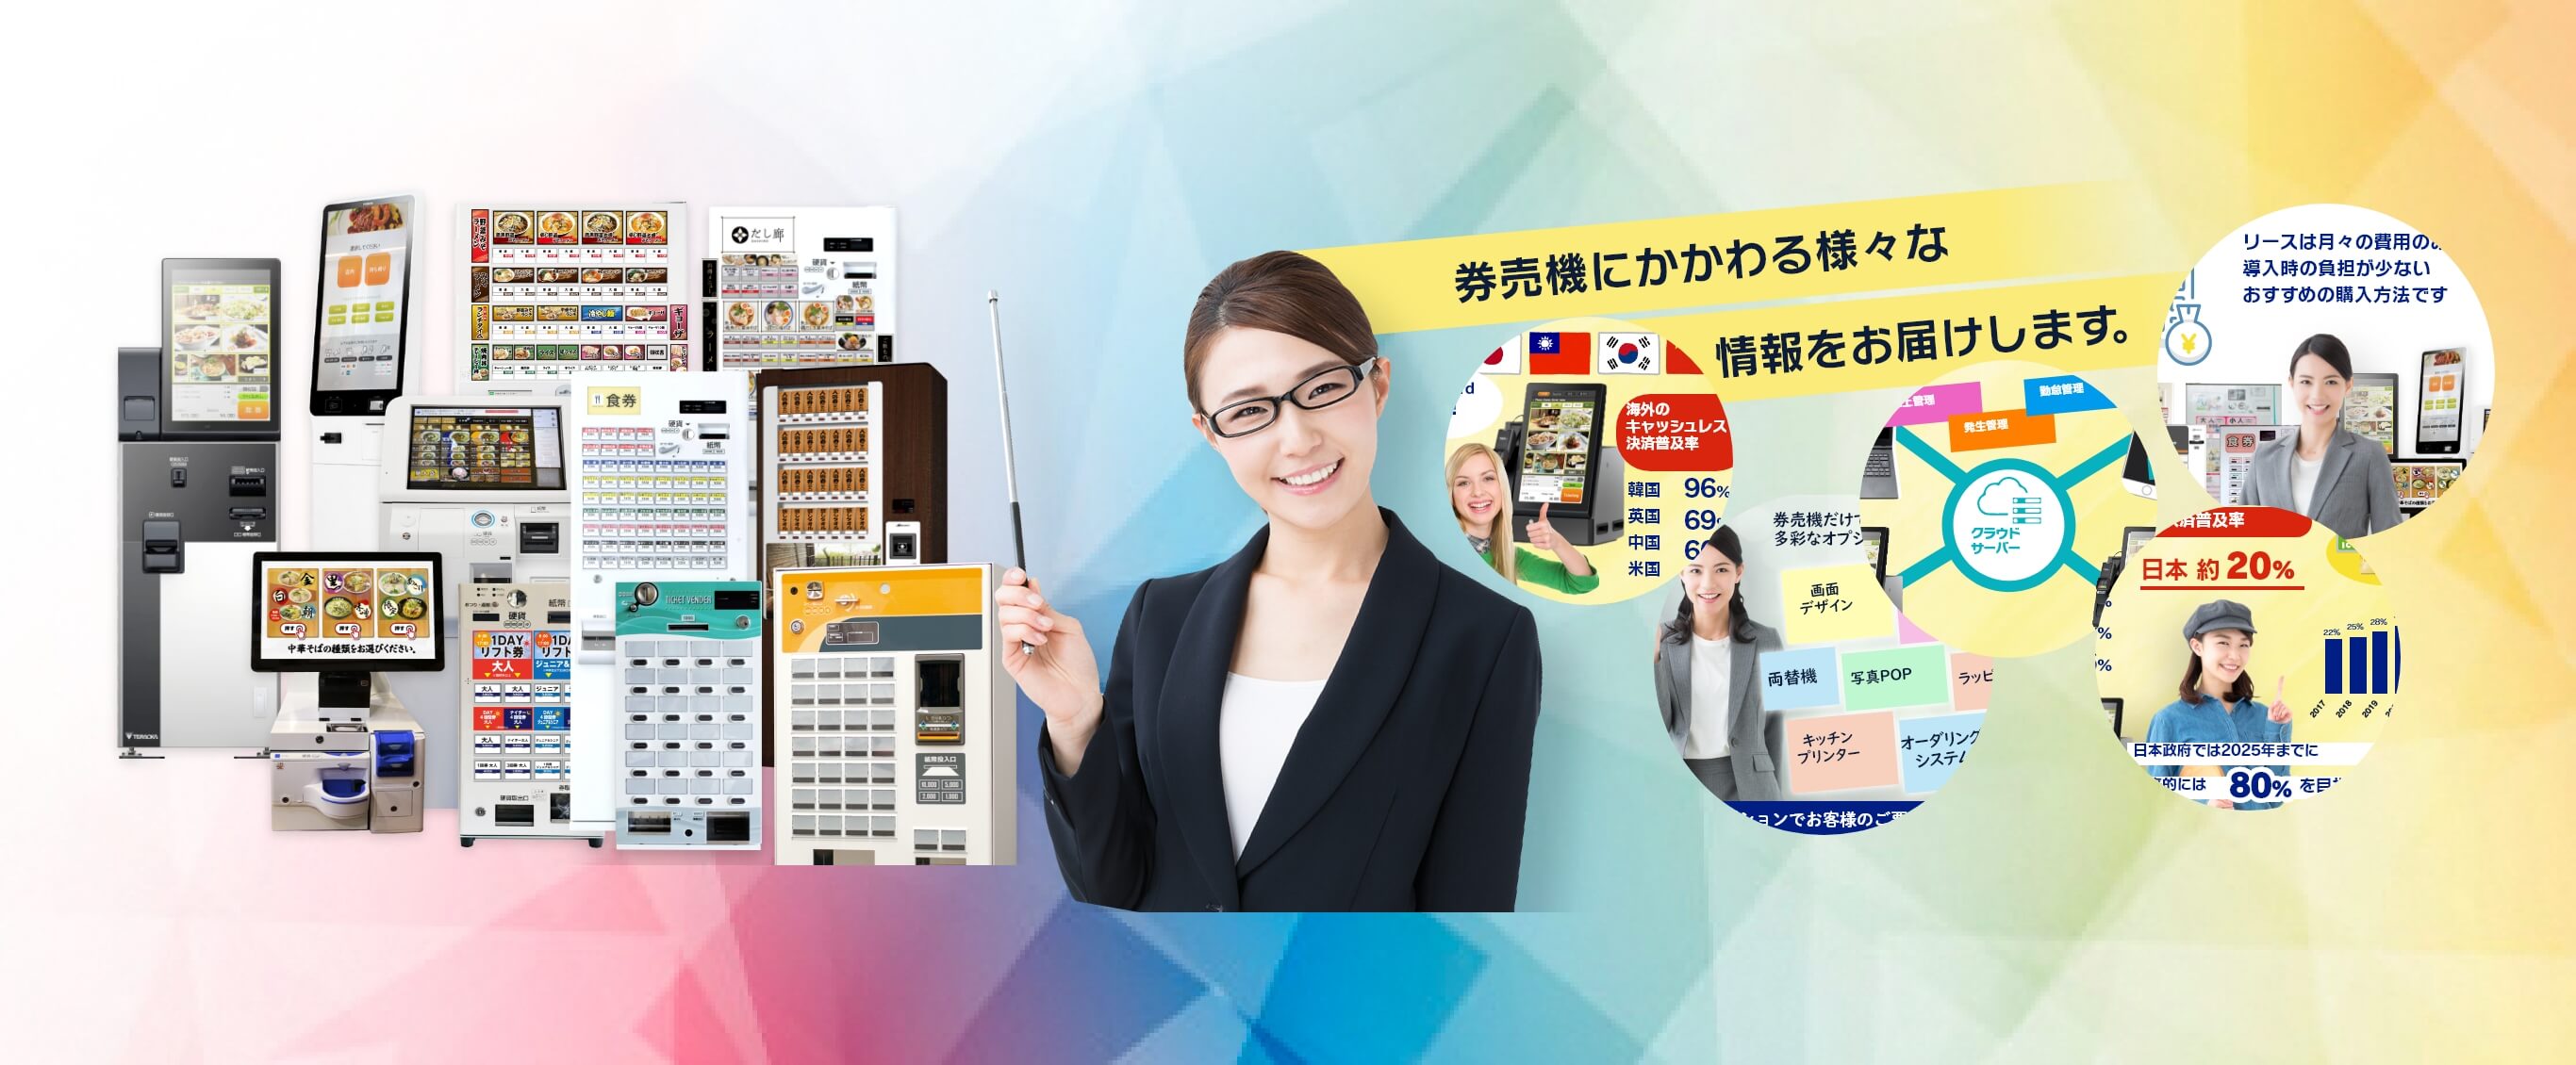 海外からみた日本の券売機の紹介ビジュアル